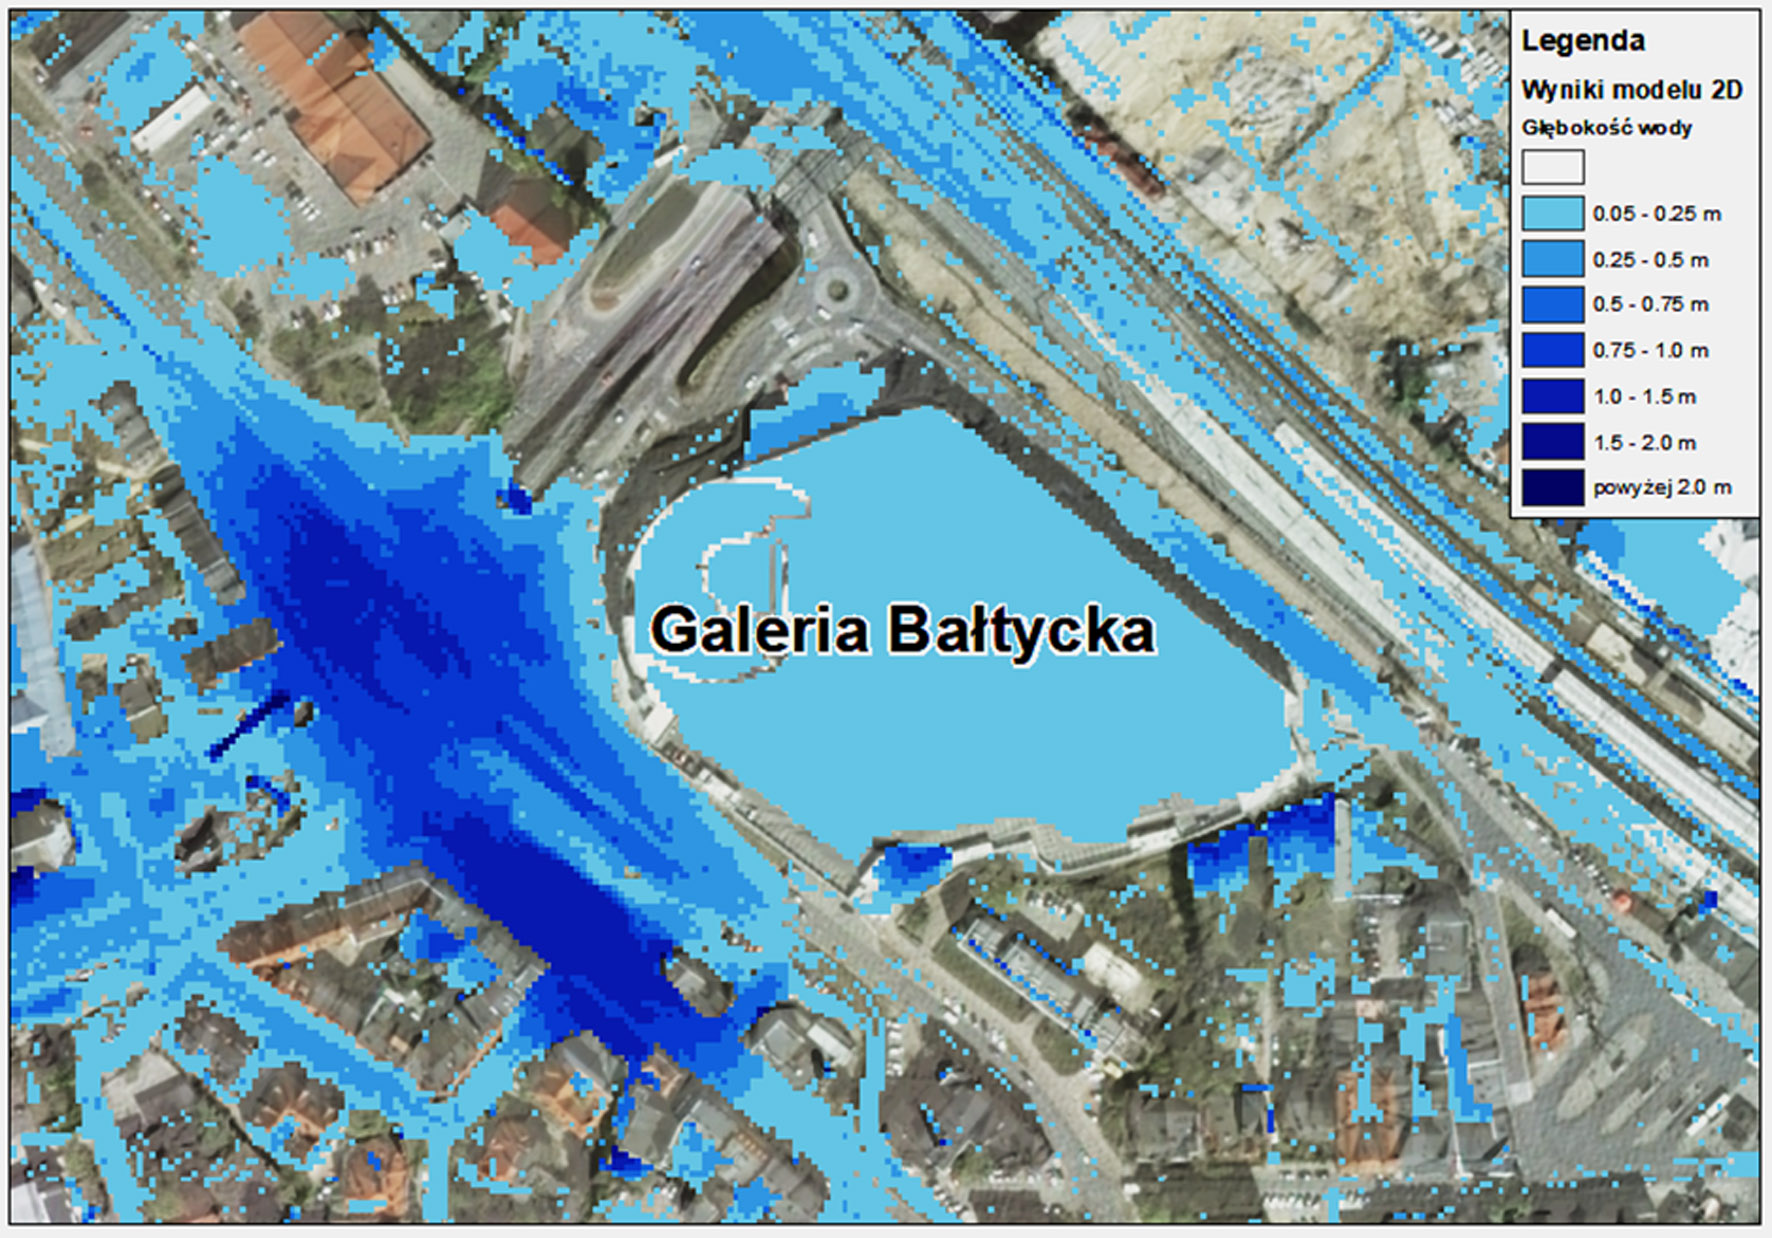 Obszary zagrożenia błyskawicznymi powodziami miejskimi wyznaczone za pomocą oprogramowania do modelowania hydrodynamicznego – Galeria Bałtycka, Gdańsk Wrzeszcz.